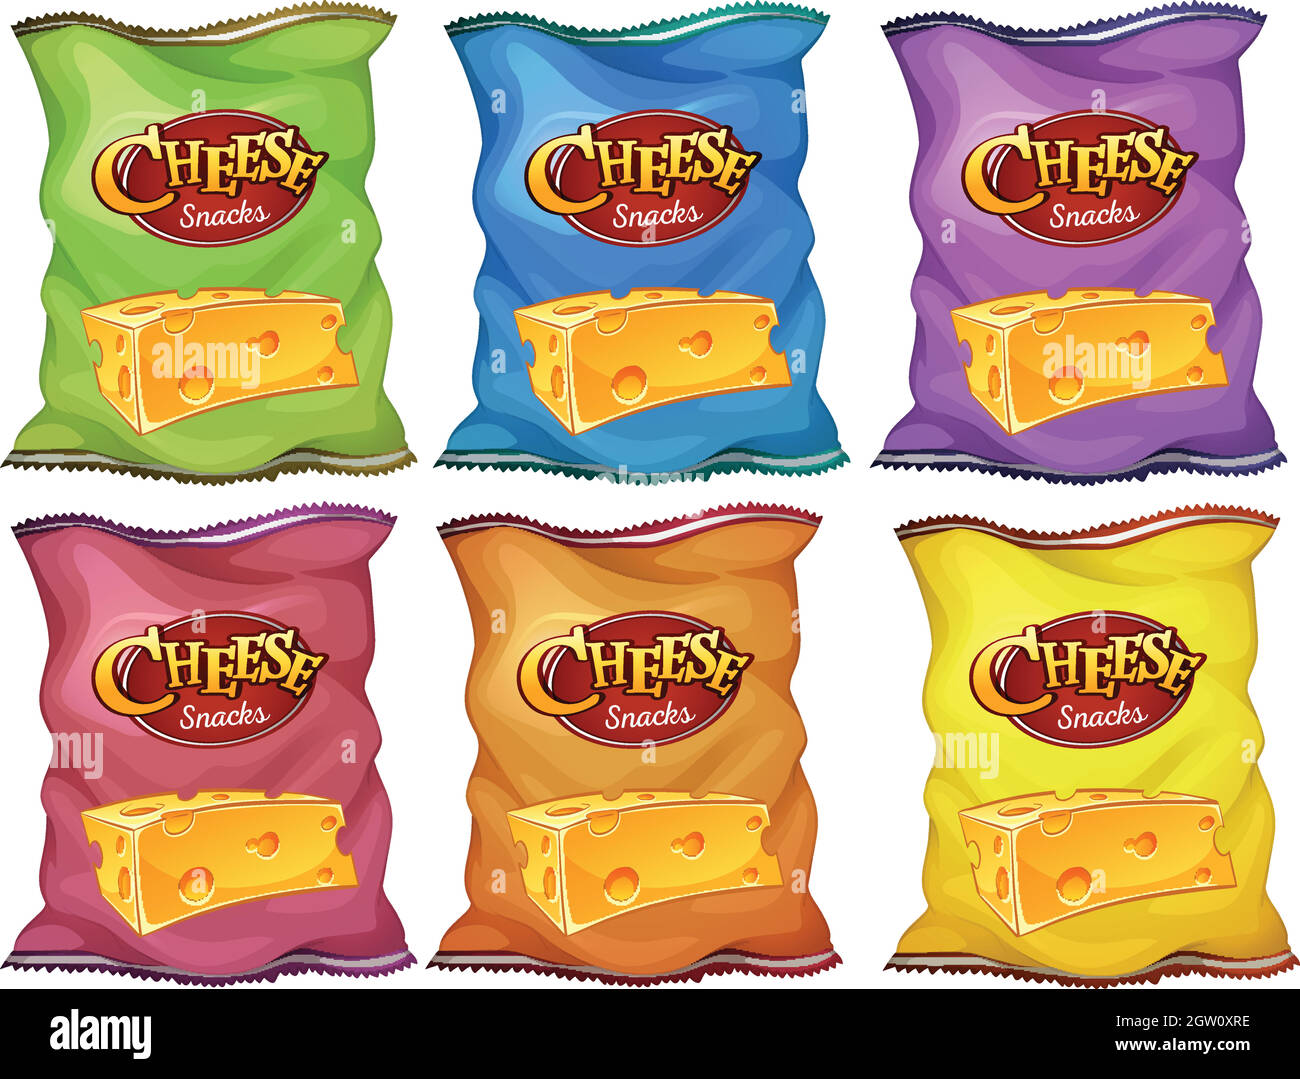 En-cas au fromage dans six sacs de couleur Illustration de Vecteur